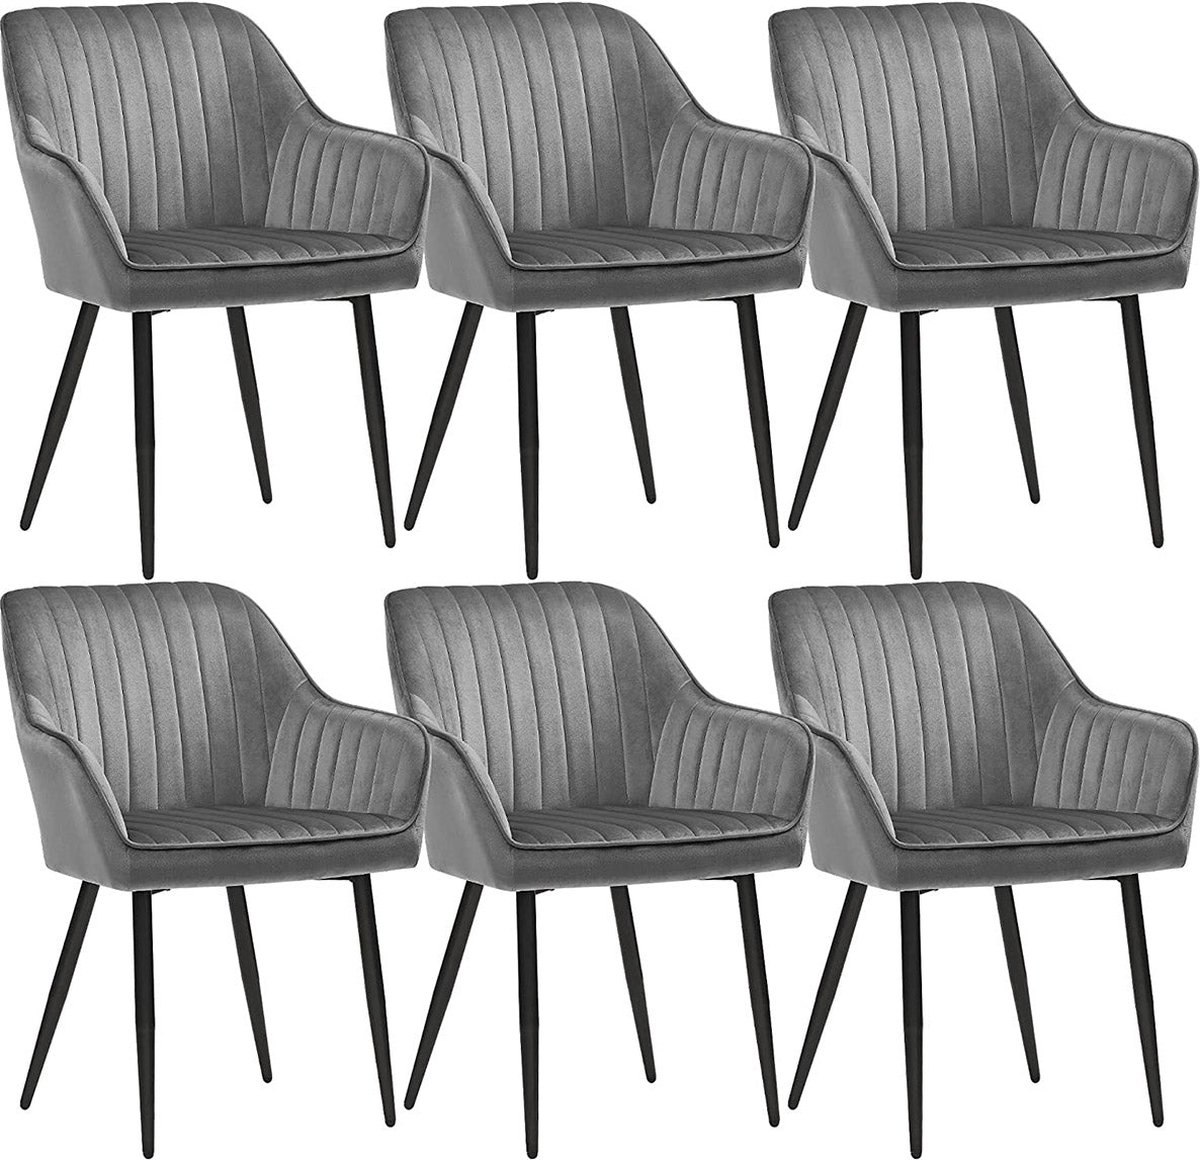 Eetkamerstoelen - Fauteuil - Gestoffeerde stoelen - Set van 6 - Met armleuningen - Metalen poten - Fluwelen bekleding - Grijs